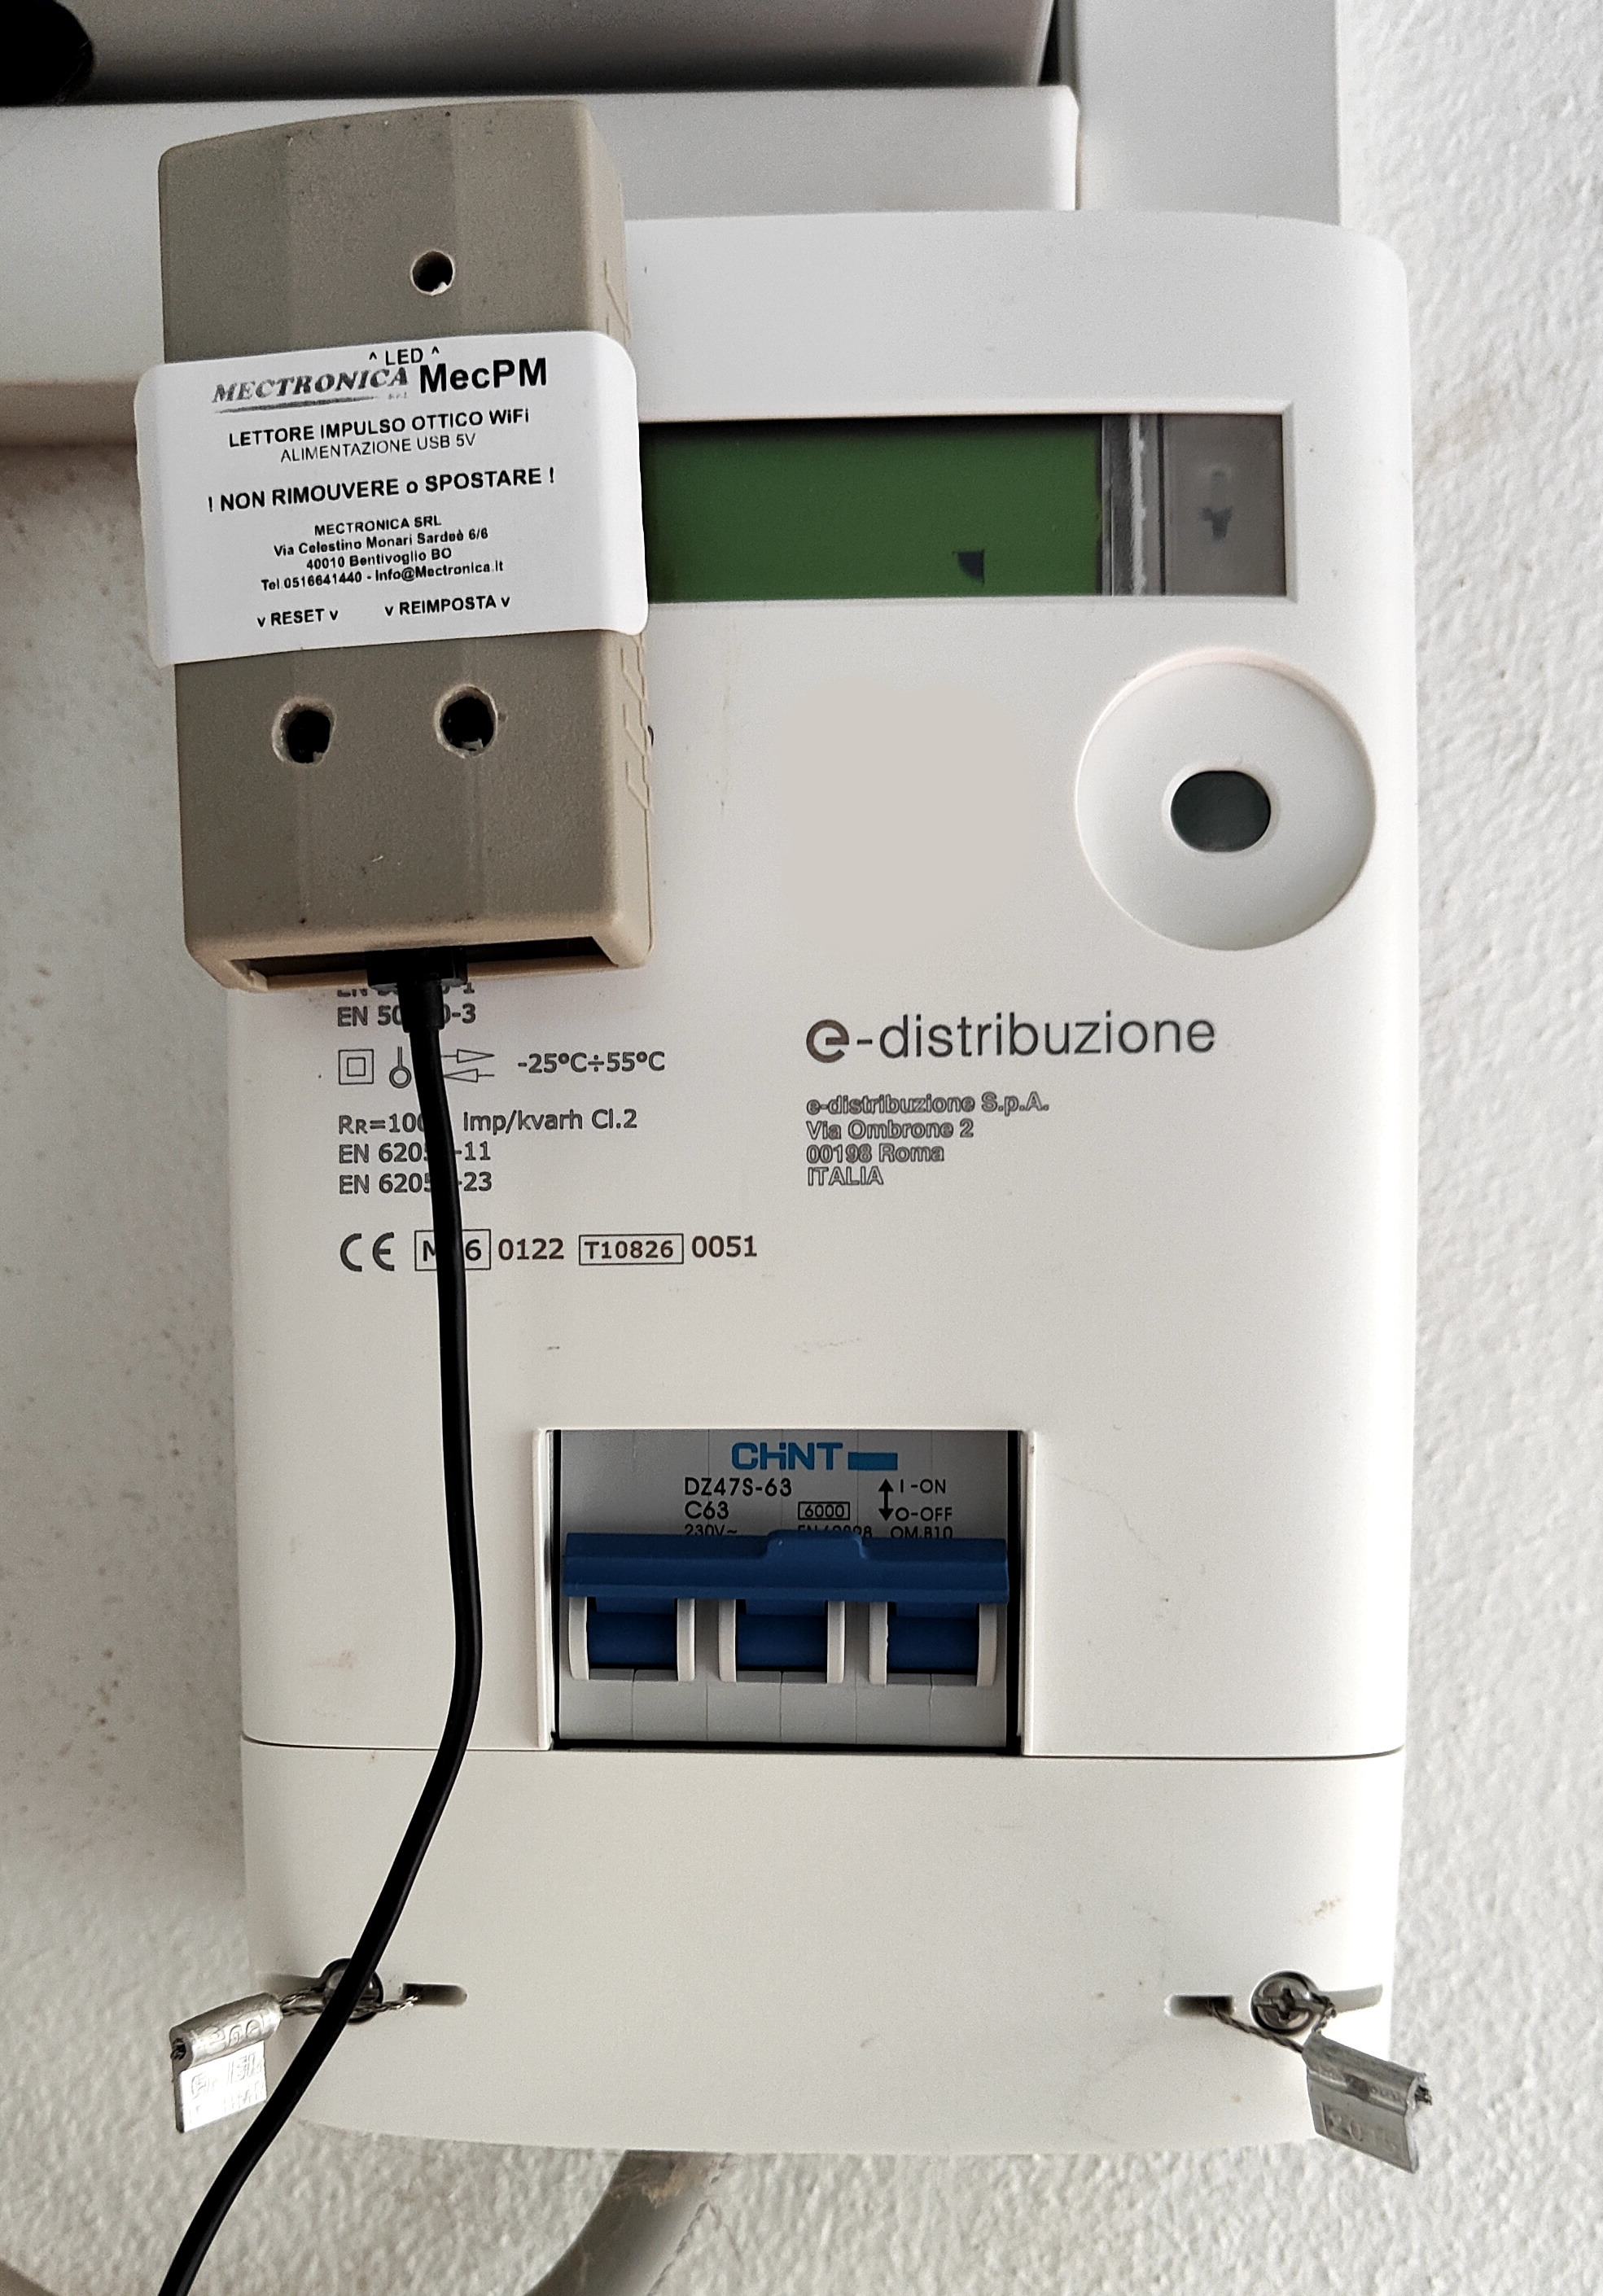 MecPM Misuratore consumo WiFi Smart Meter per contatori elettrici -  Mectronica srl